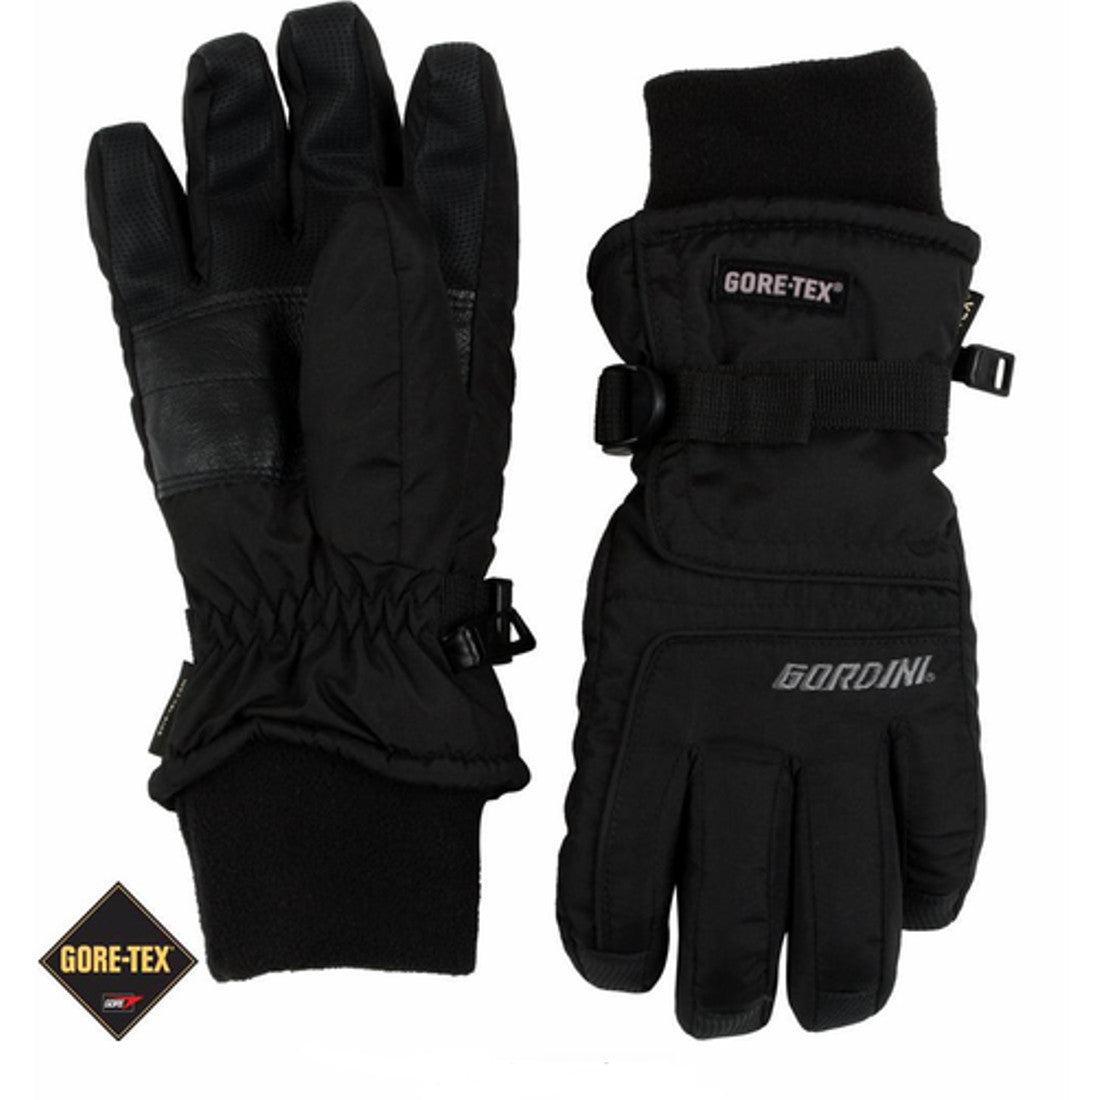 Gordini GTX Glove - Women's